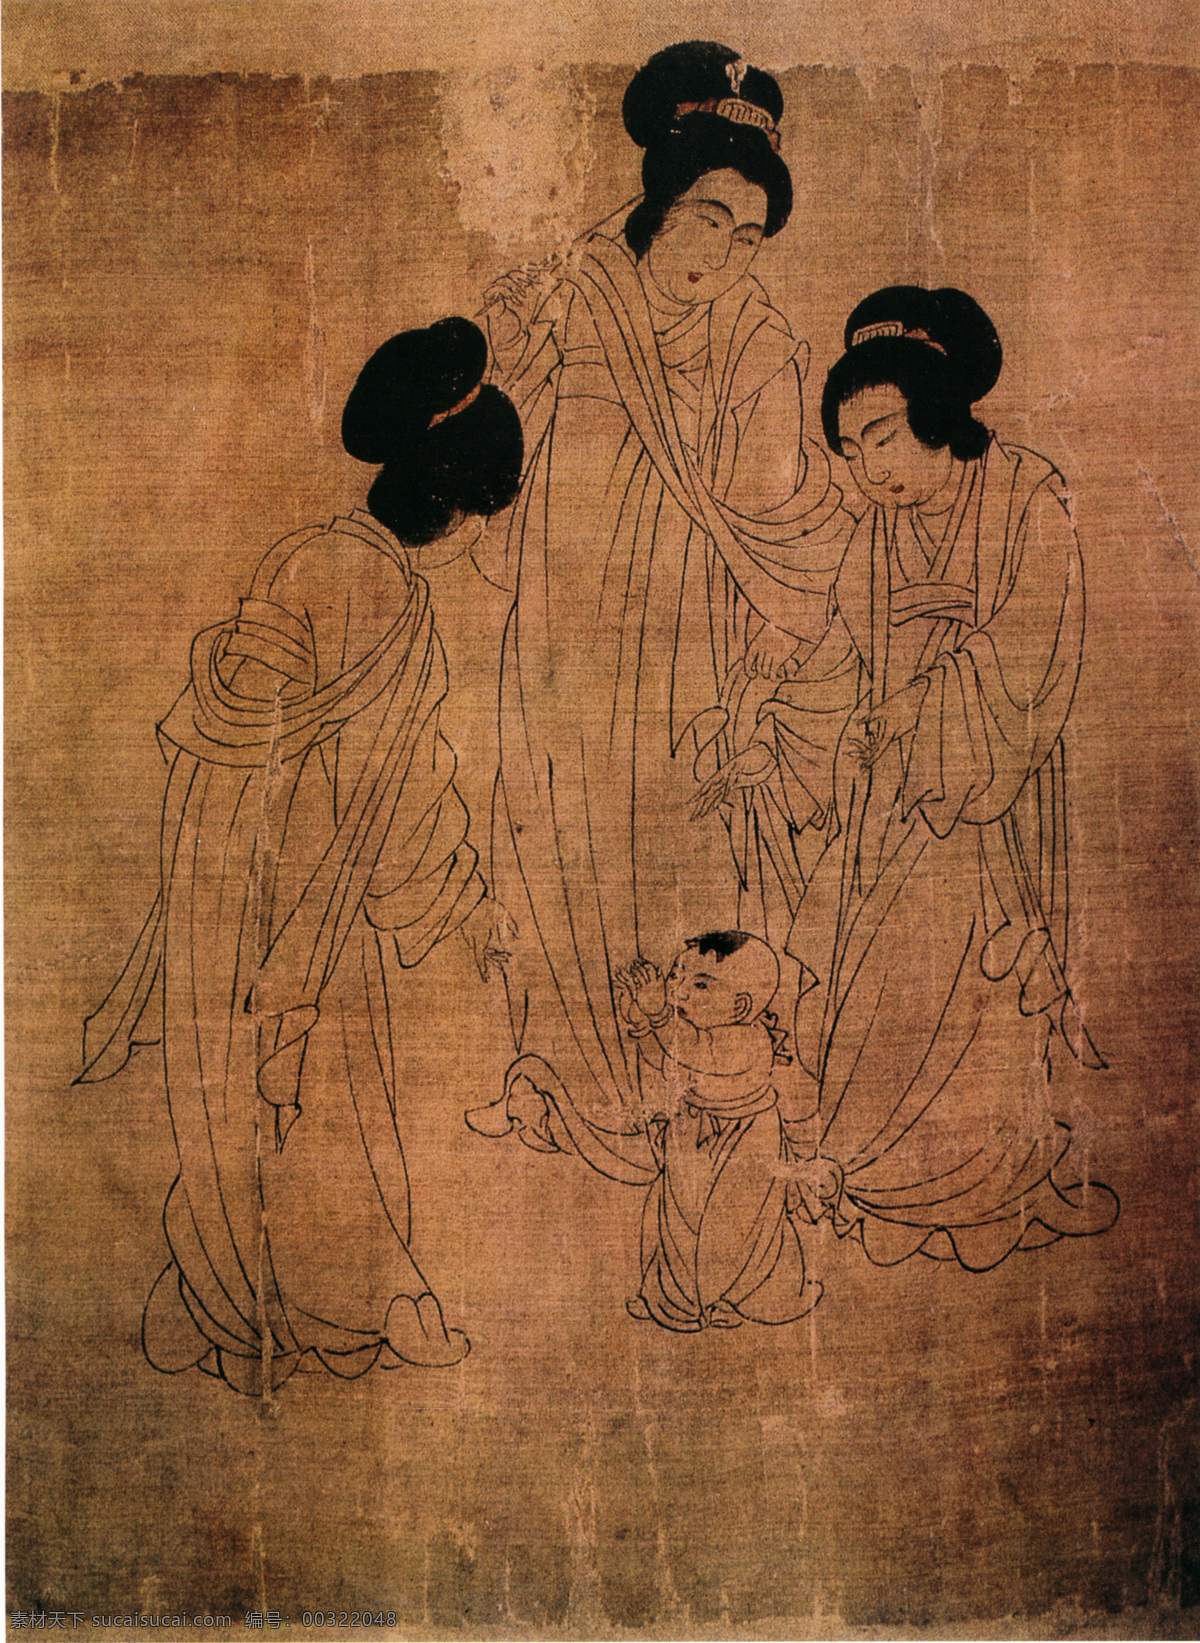 宫中图i 人物画 中国 古画 中国古画 设计素材 人物名画 古典藏画 书画美术 棕色